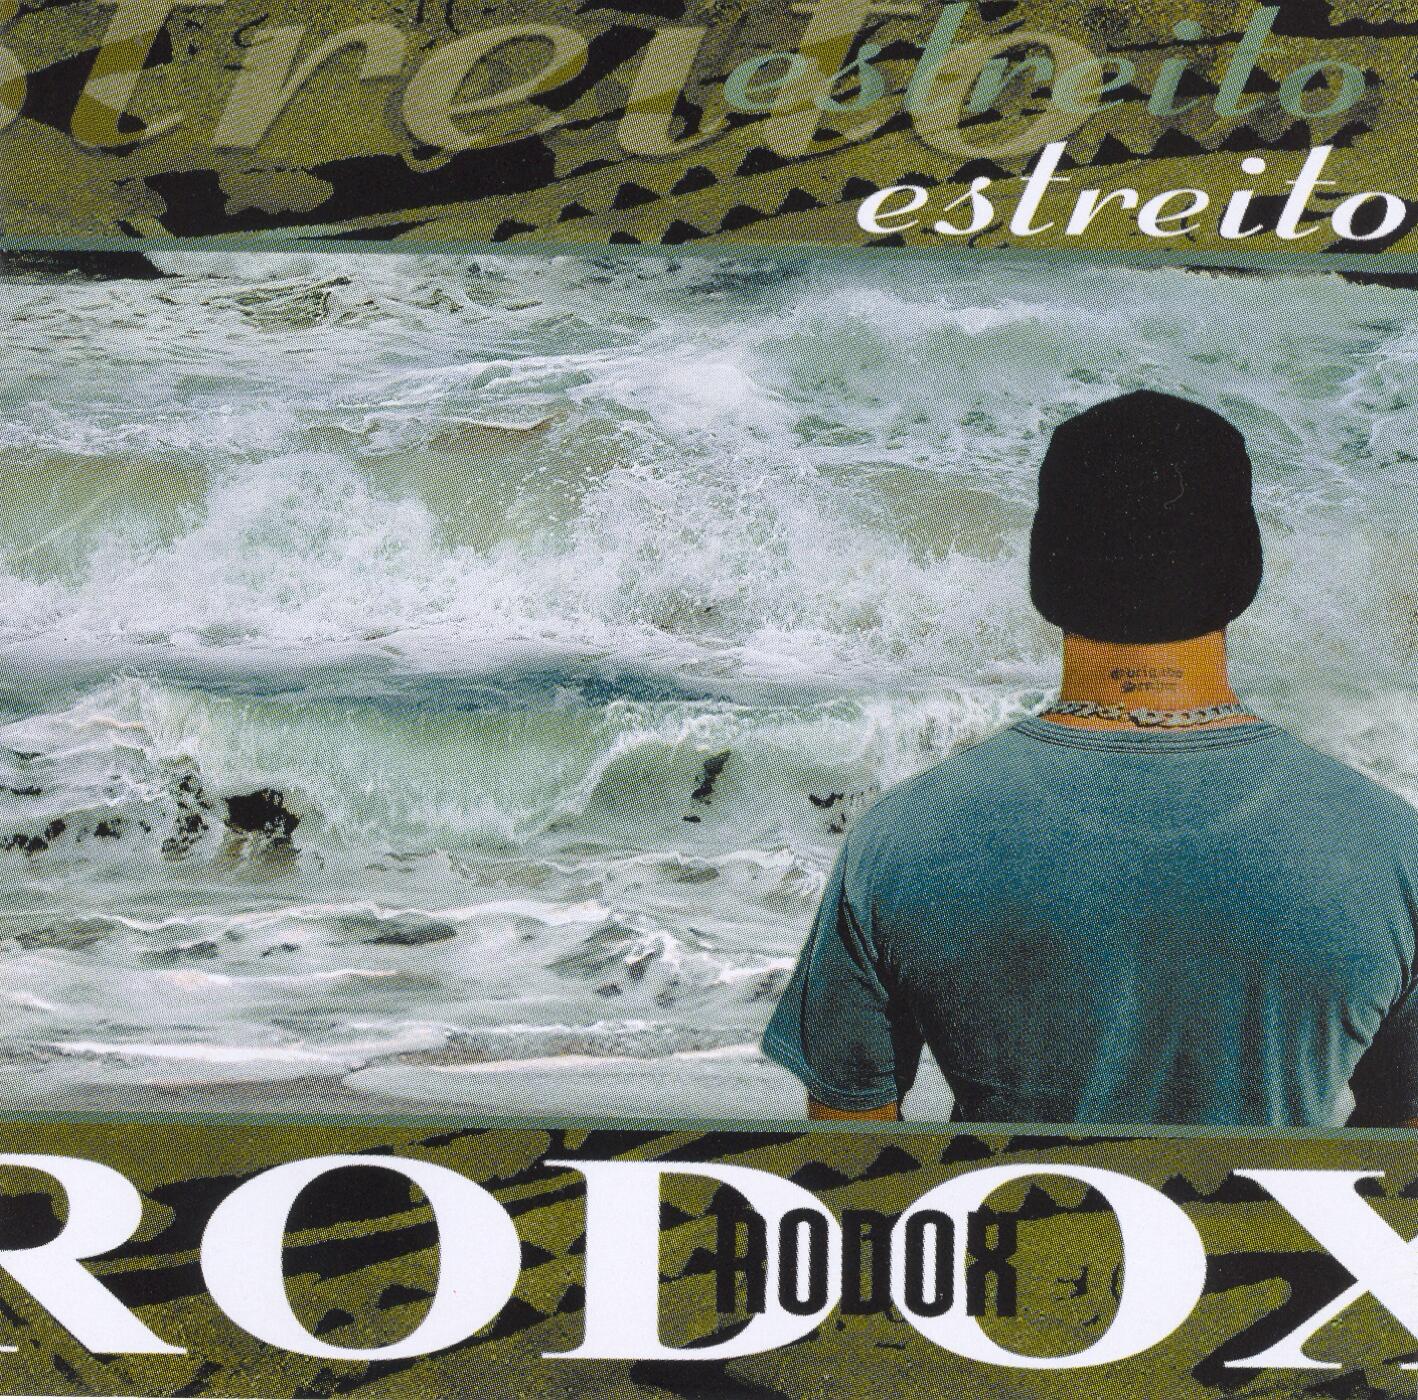 Rodox photos